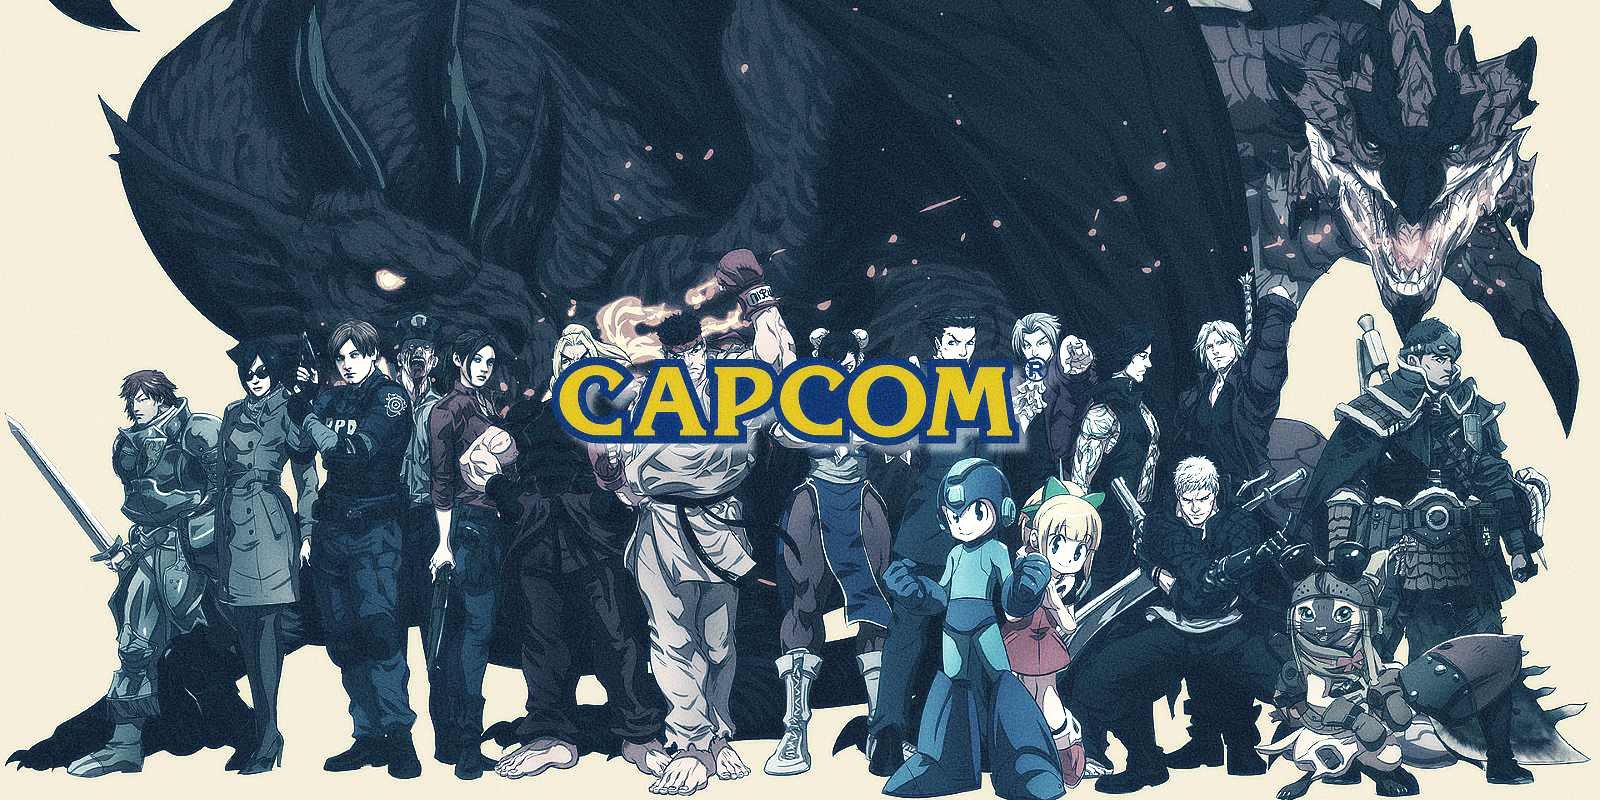 Capcom ผู้พัฒนาเกมส์สัญชาติญี่ปุ่นถูกโจมตีทางไซเบอร์